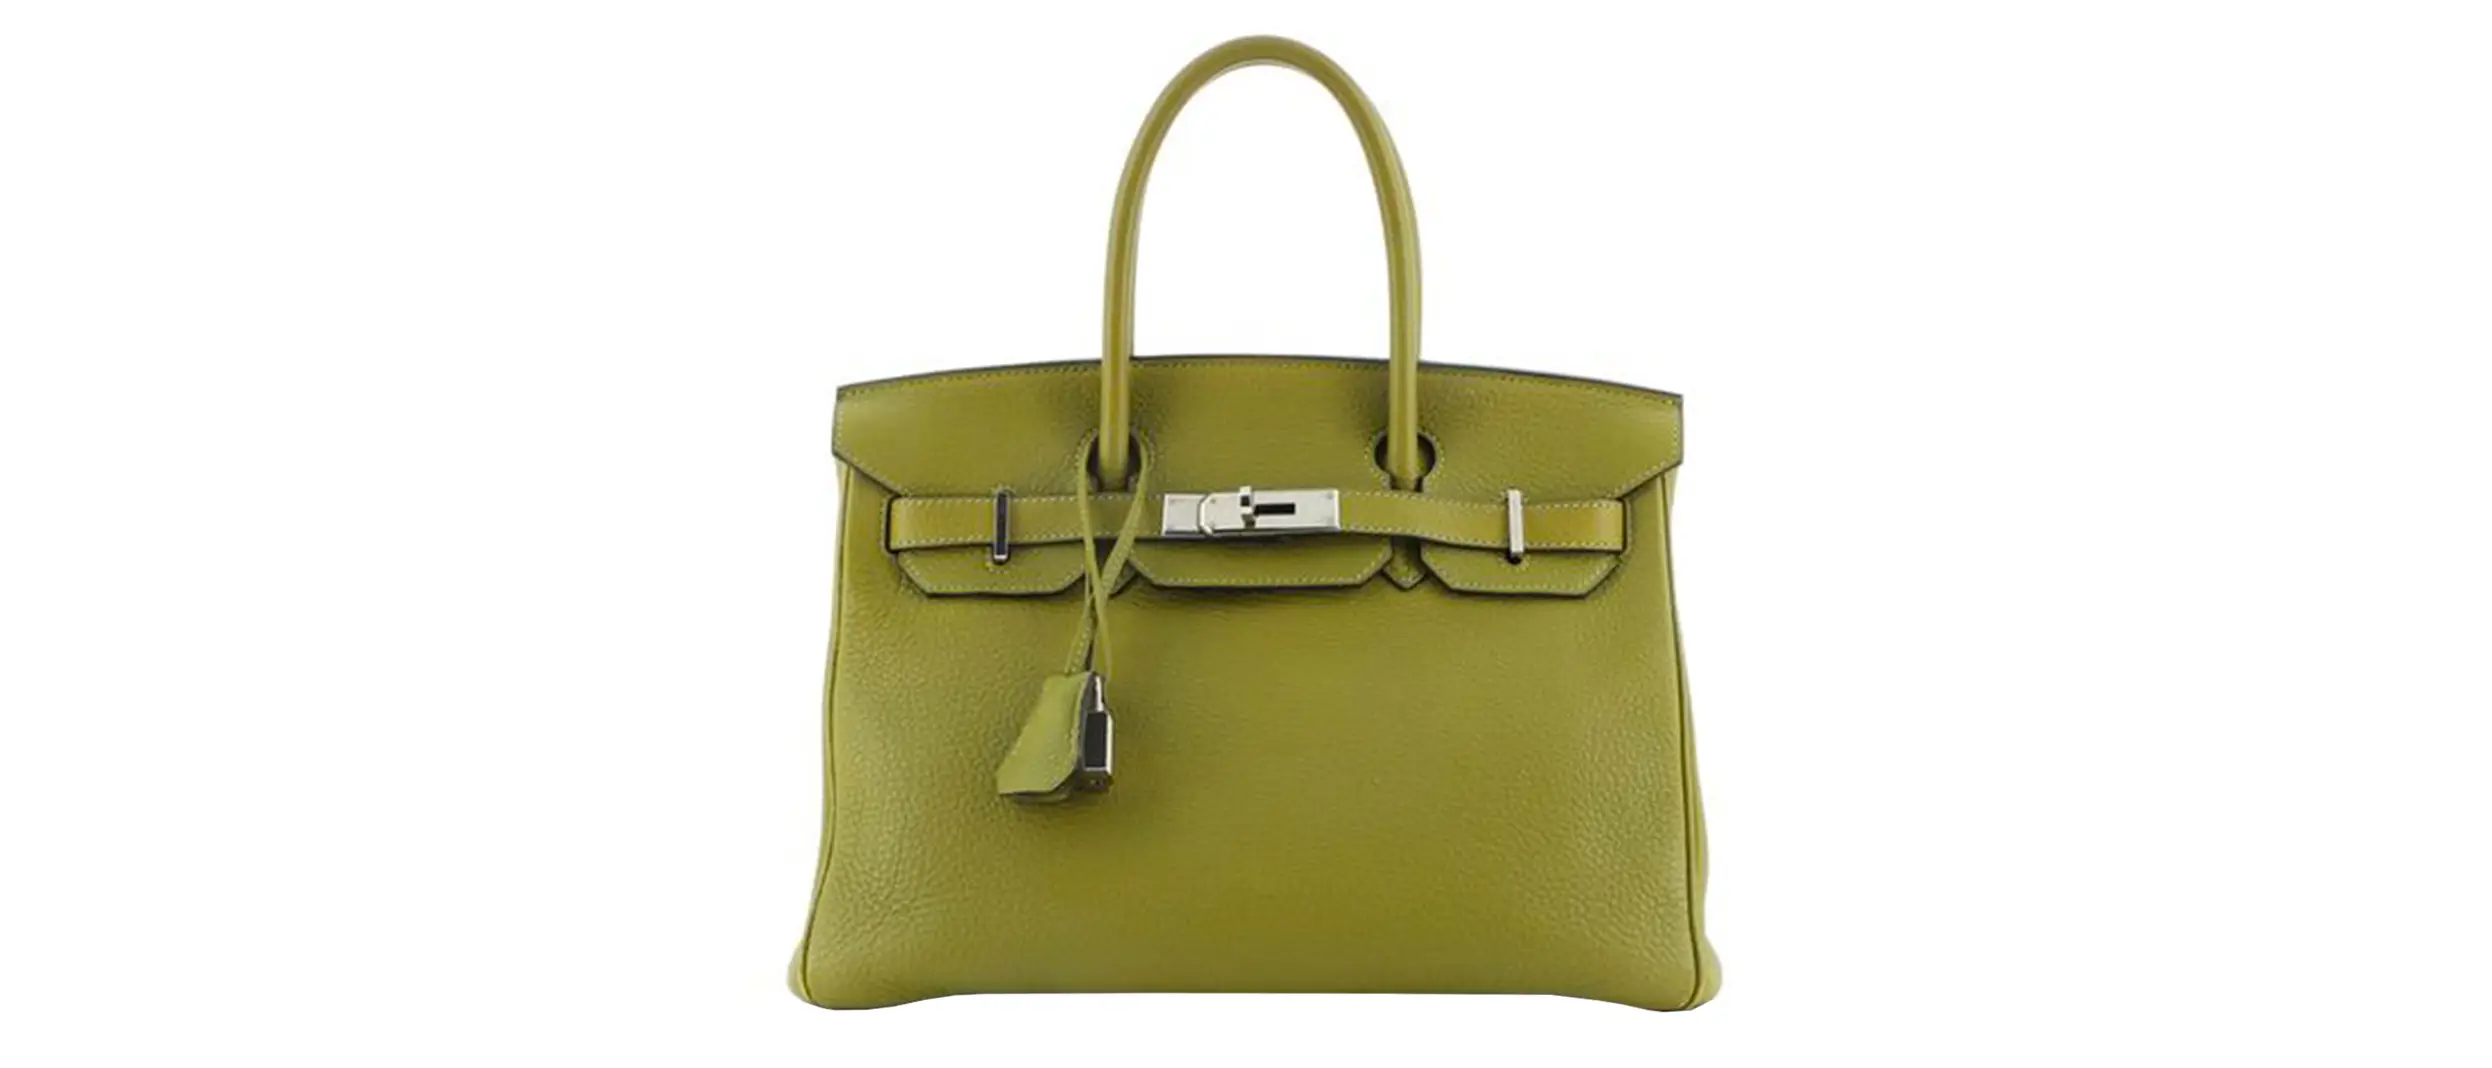 hermes-handbag-in-green-leather.jpg